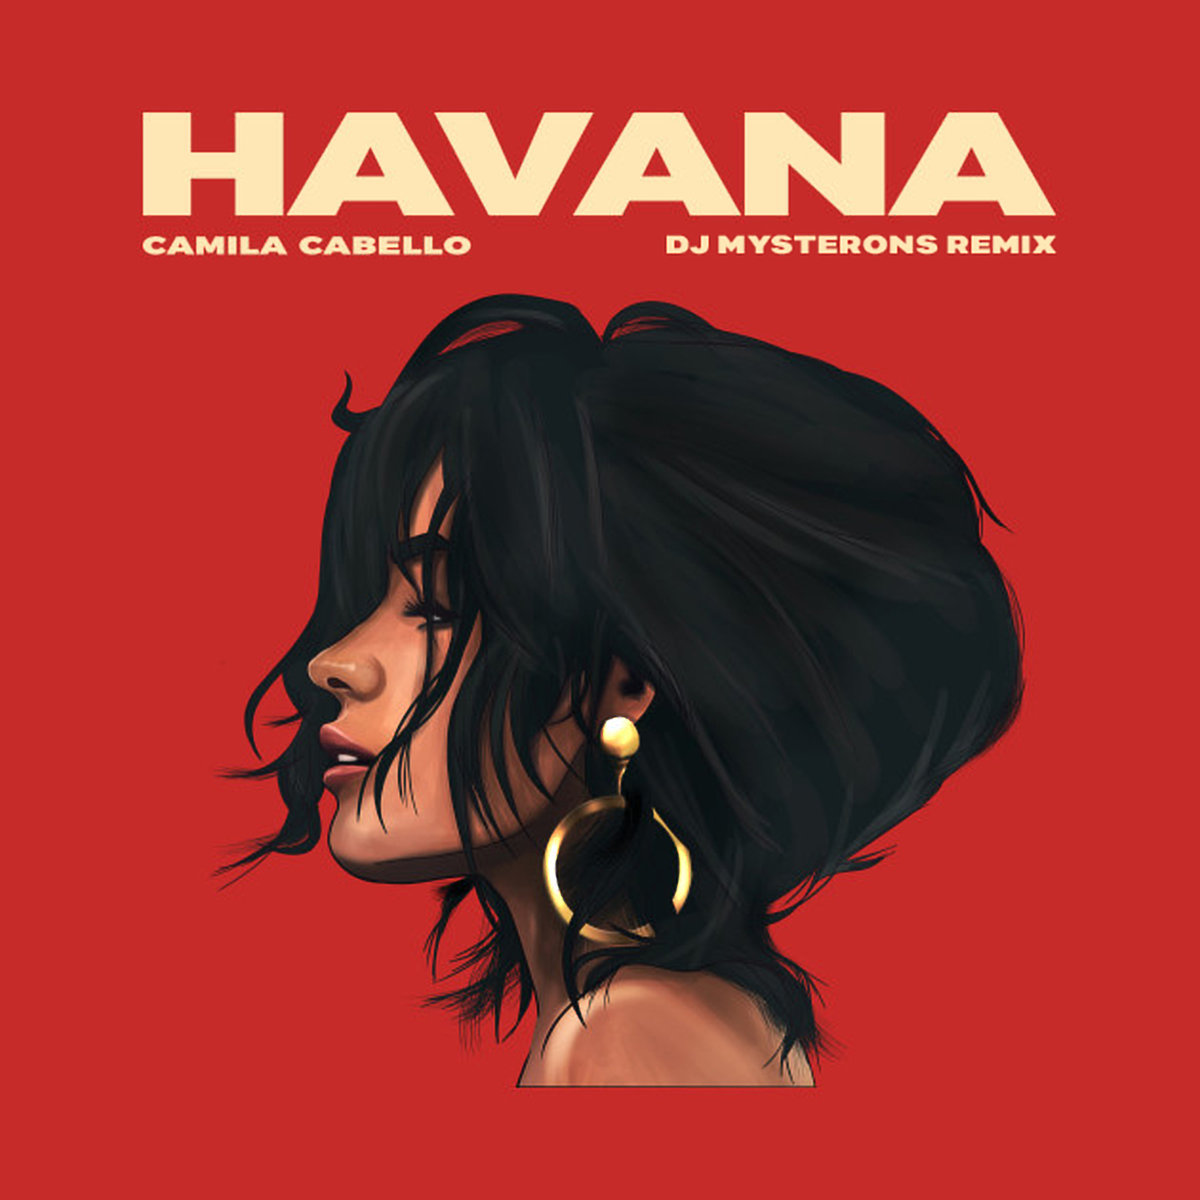 Το «Havana» έπαιξε περισσότερο στα ραδιόφωνα το 2018